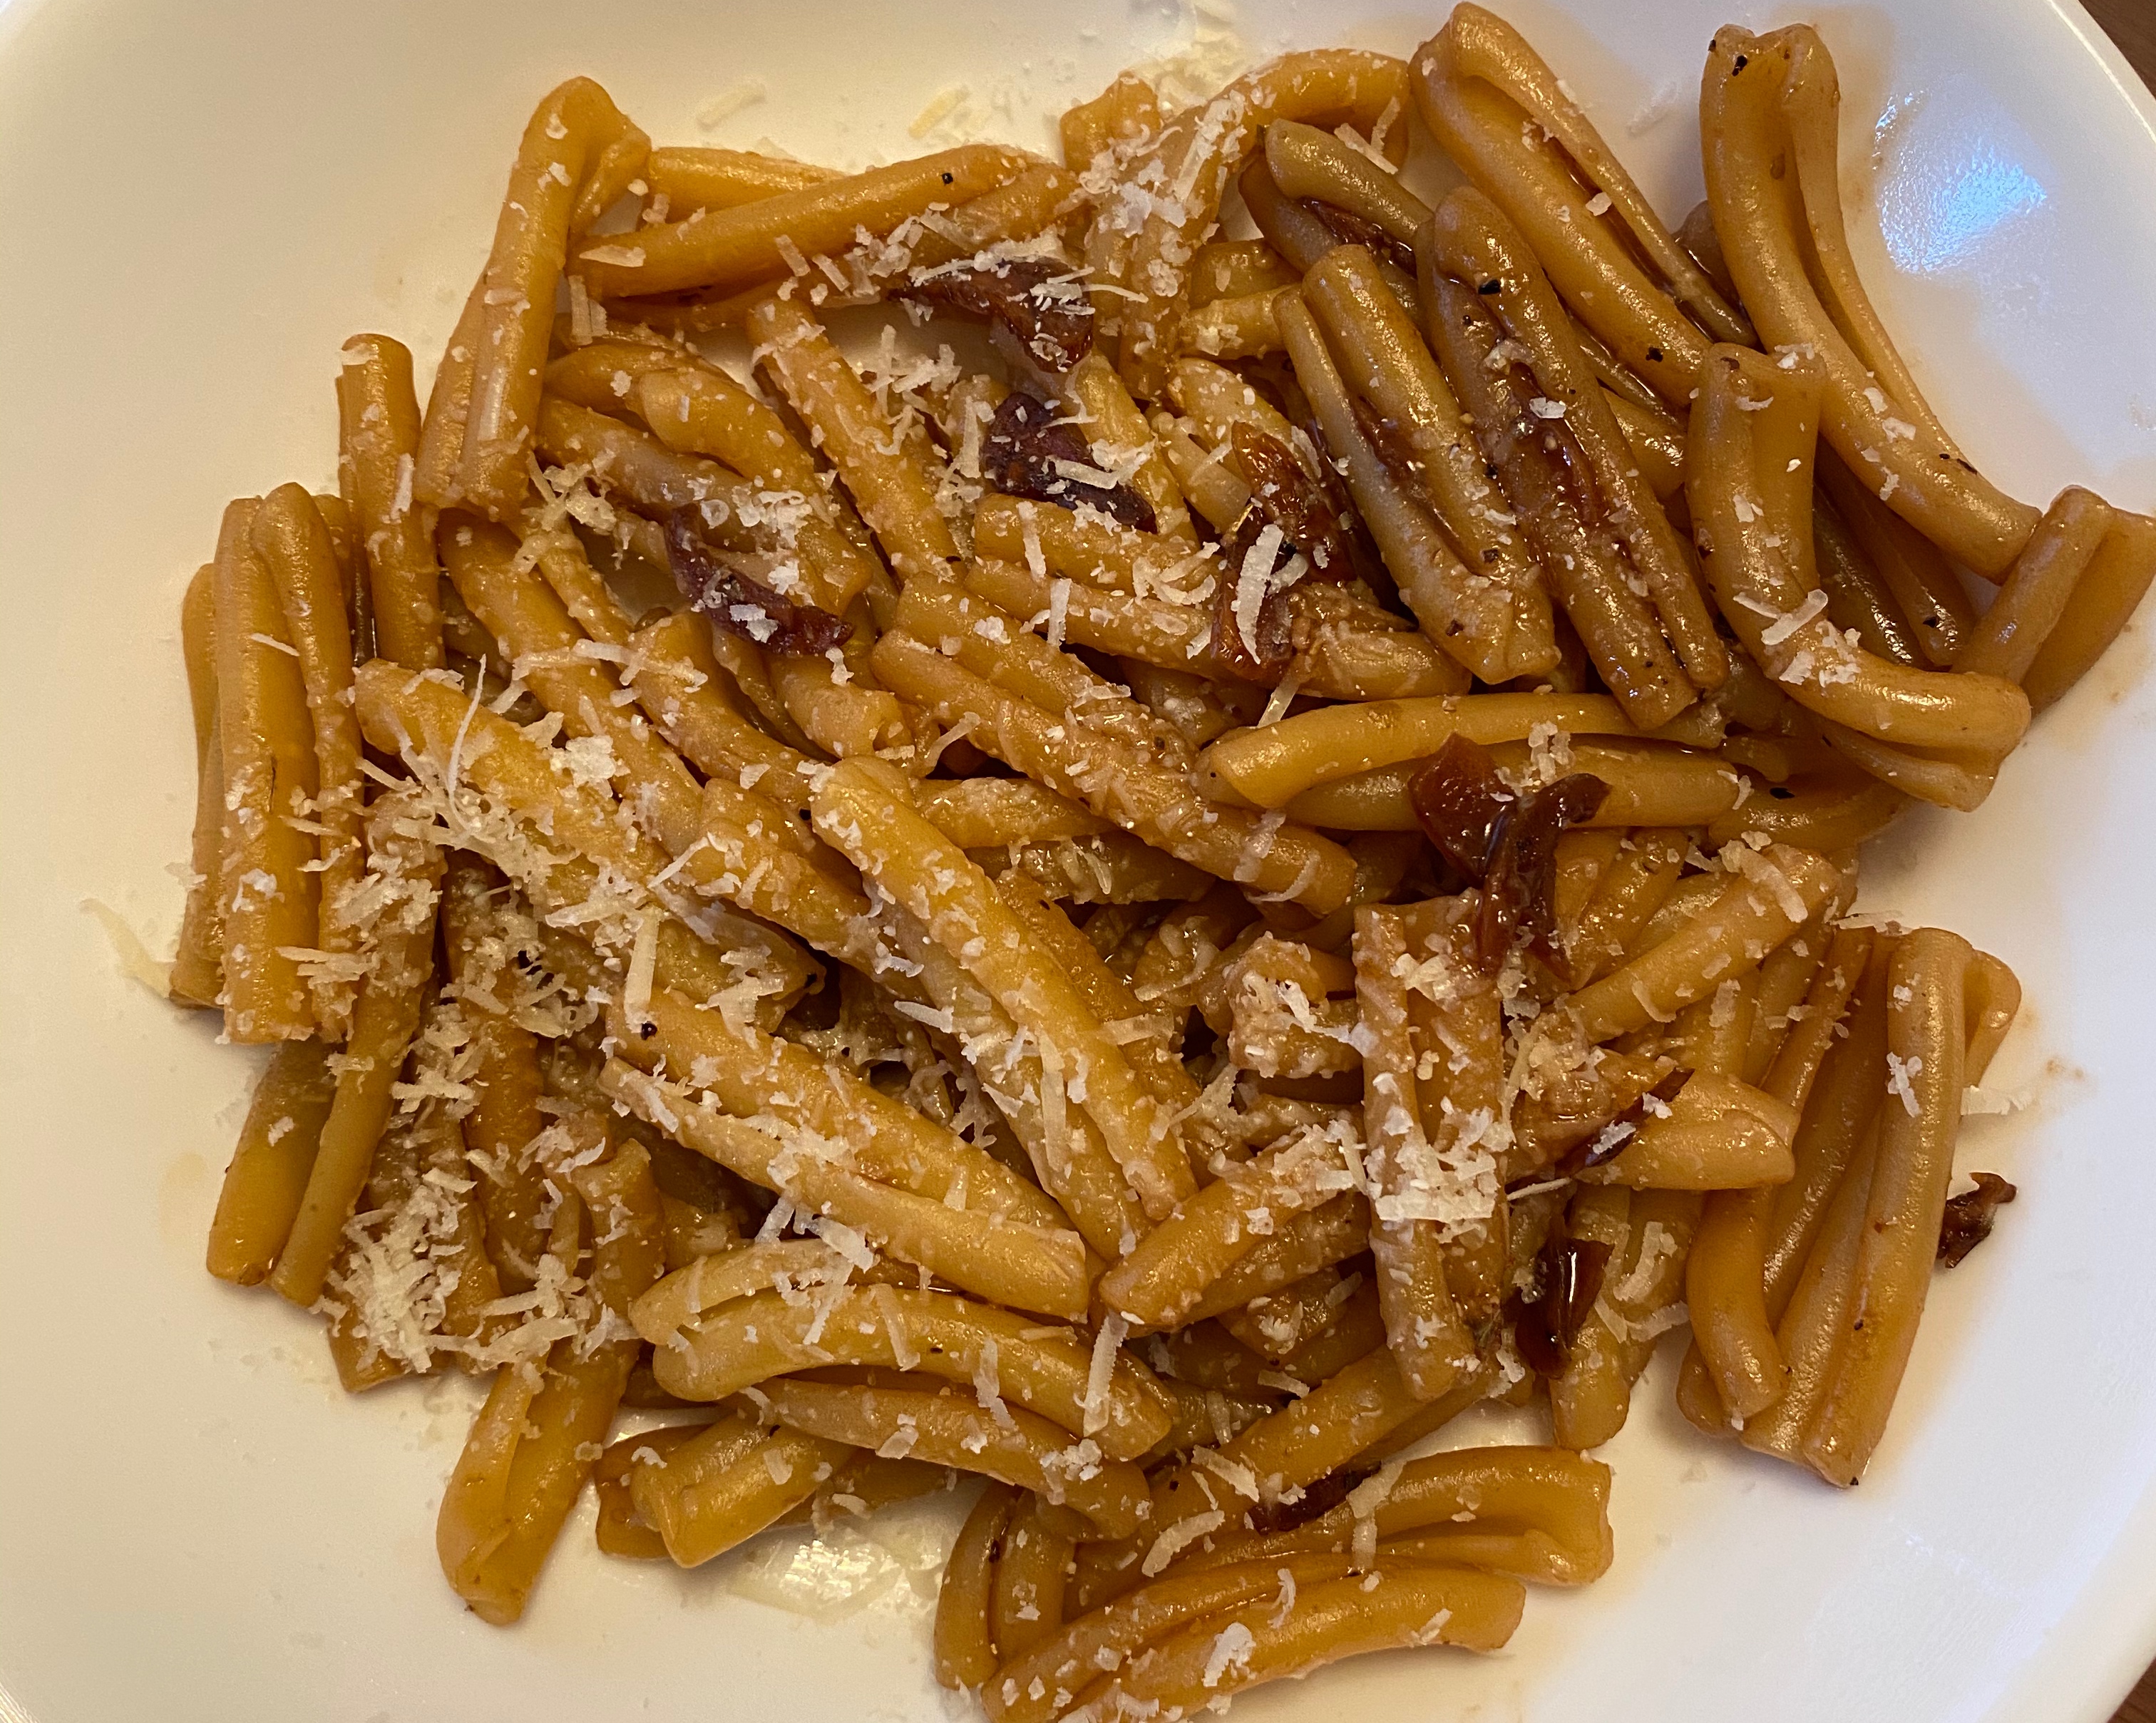 超级开胃的意大利香醋意面 balsamic vinegar pasta